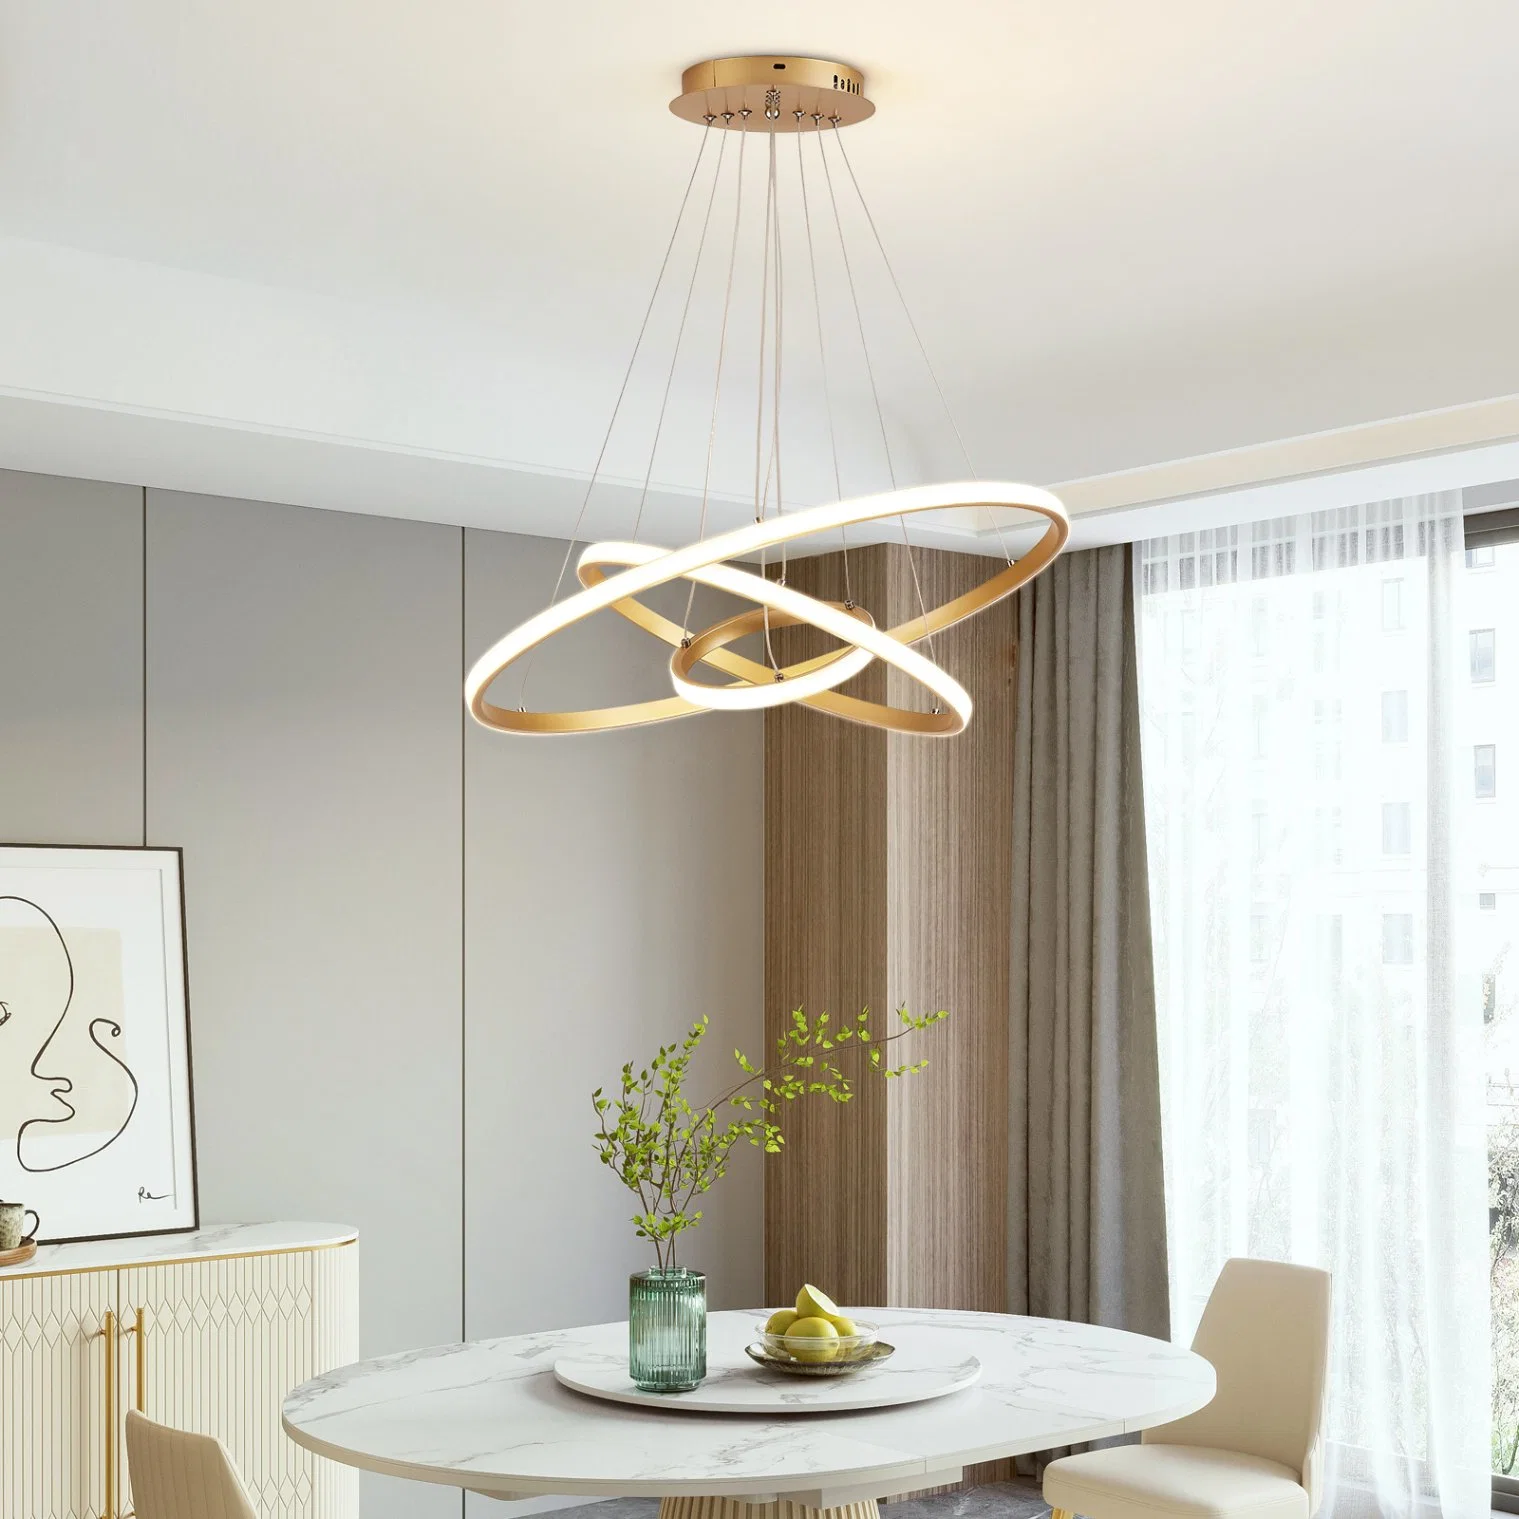 Diseño moderno y sencillo Candelabro Colgante Iluminación interior de la luz para la vida Hab.